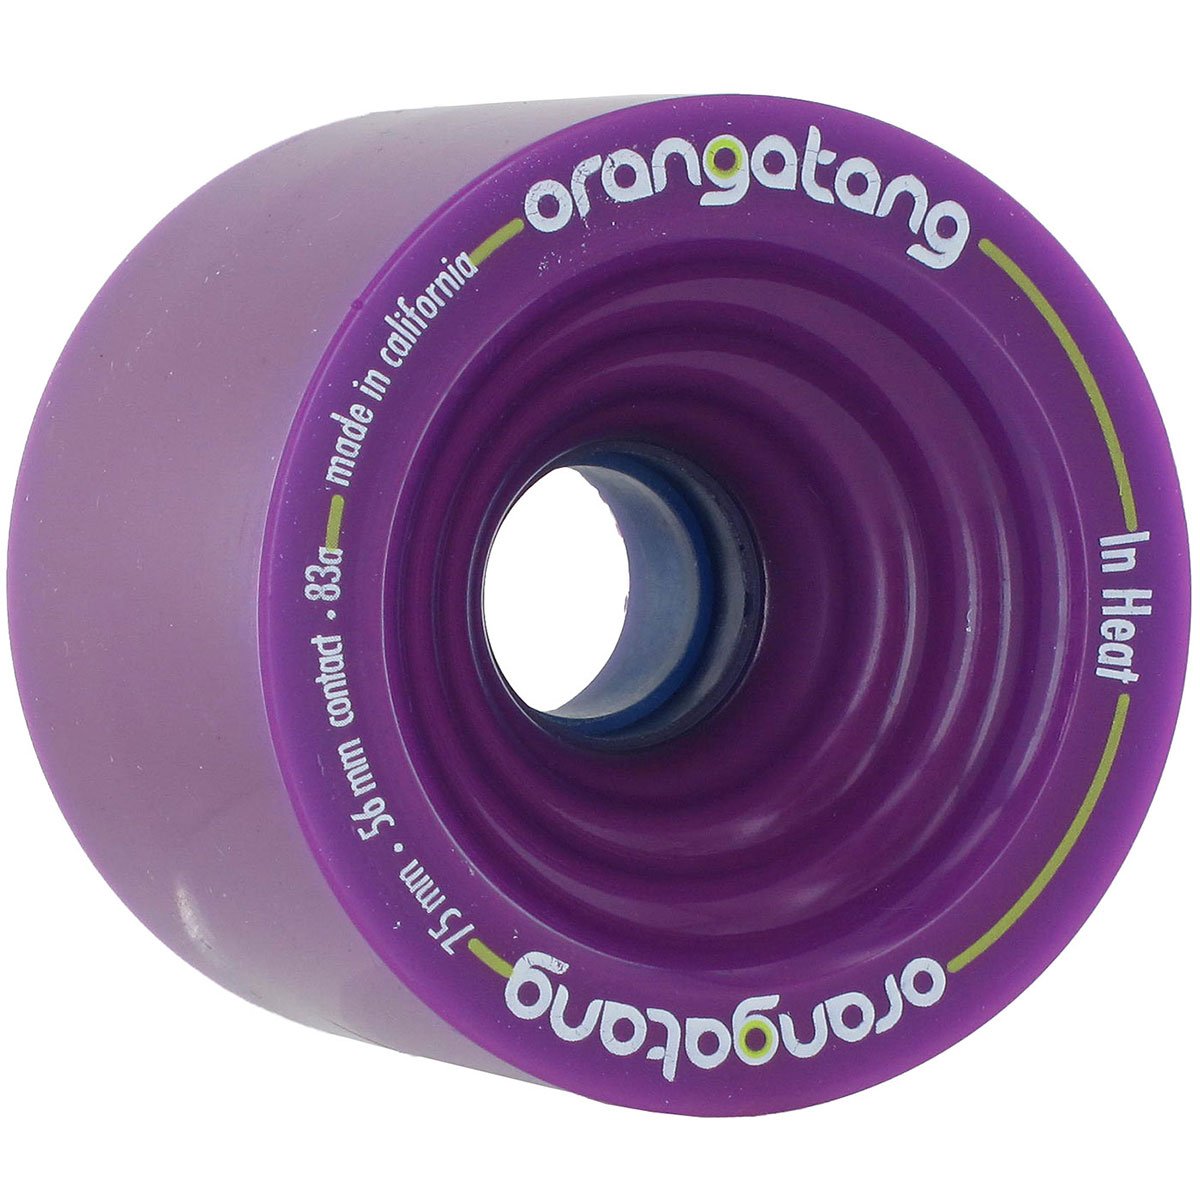 Orangatang In Heat Longboard Wheels 75mm 83a Purple image 1